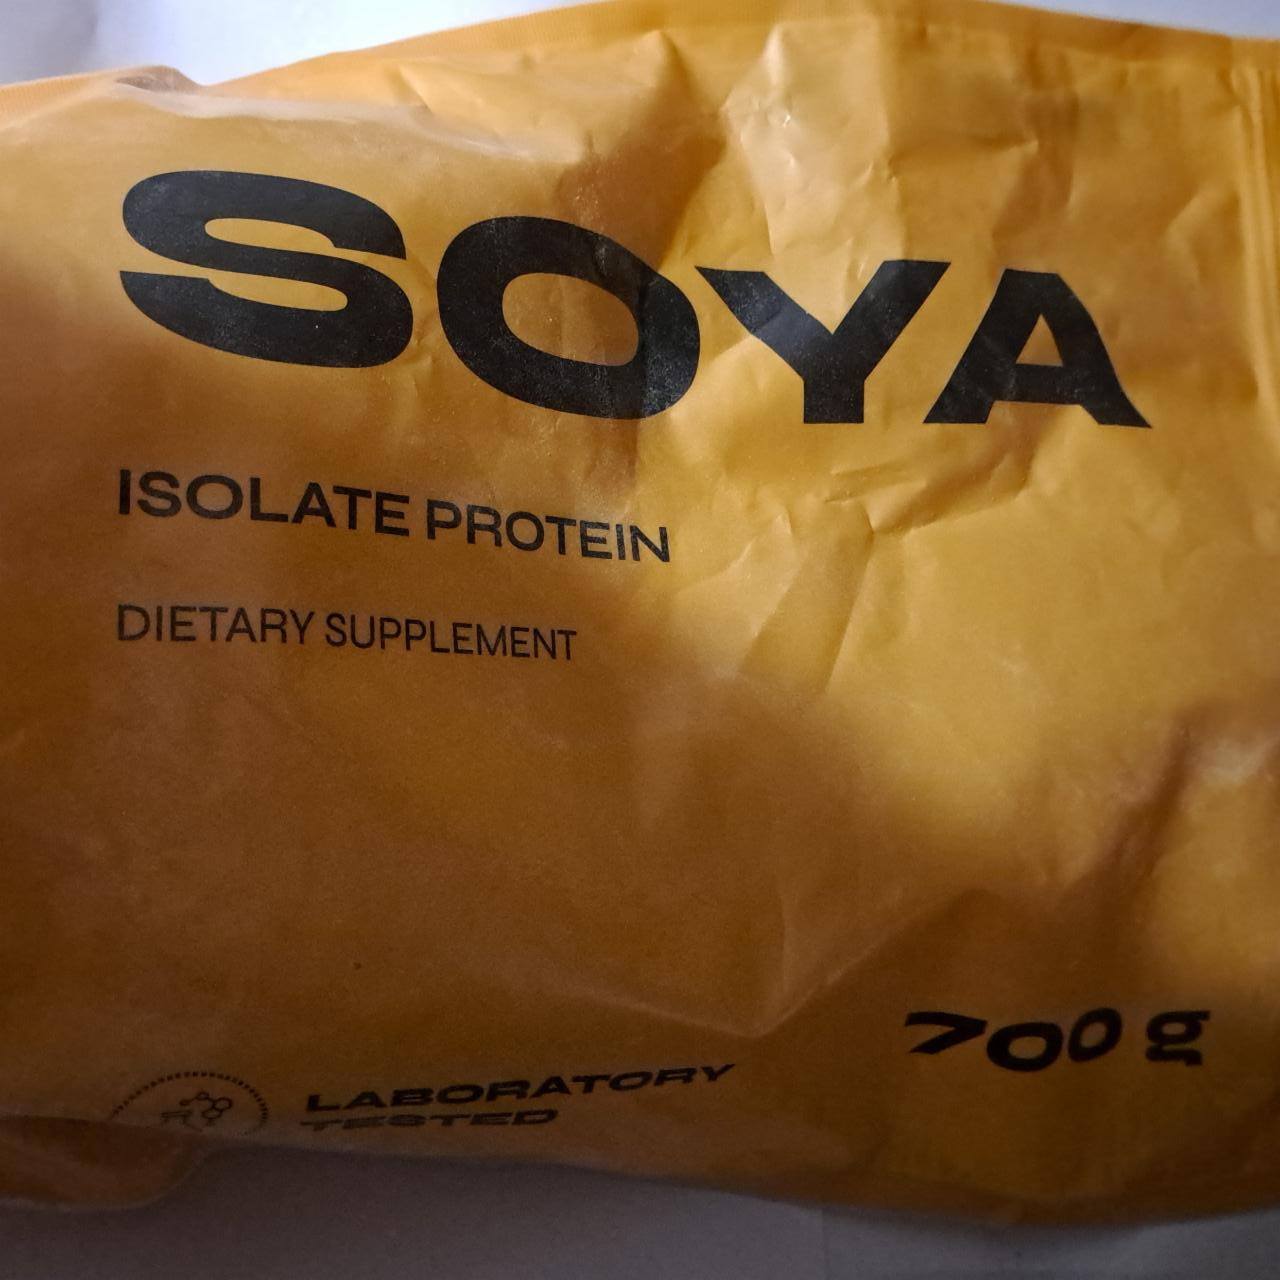 Zdjęcia - Soya Isolate Protein Nowmax